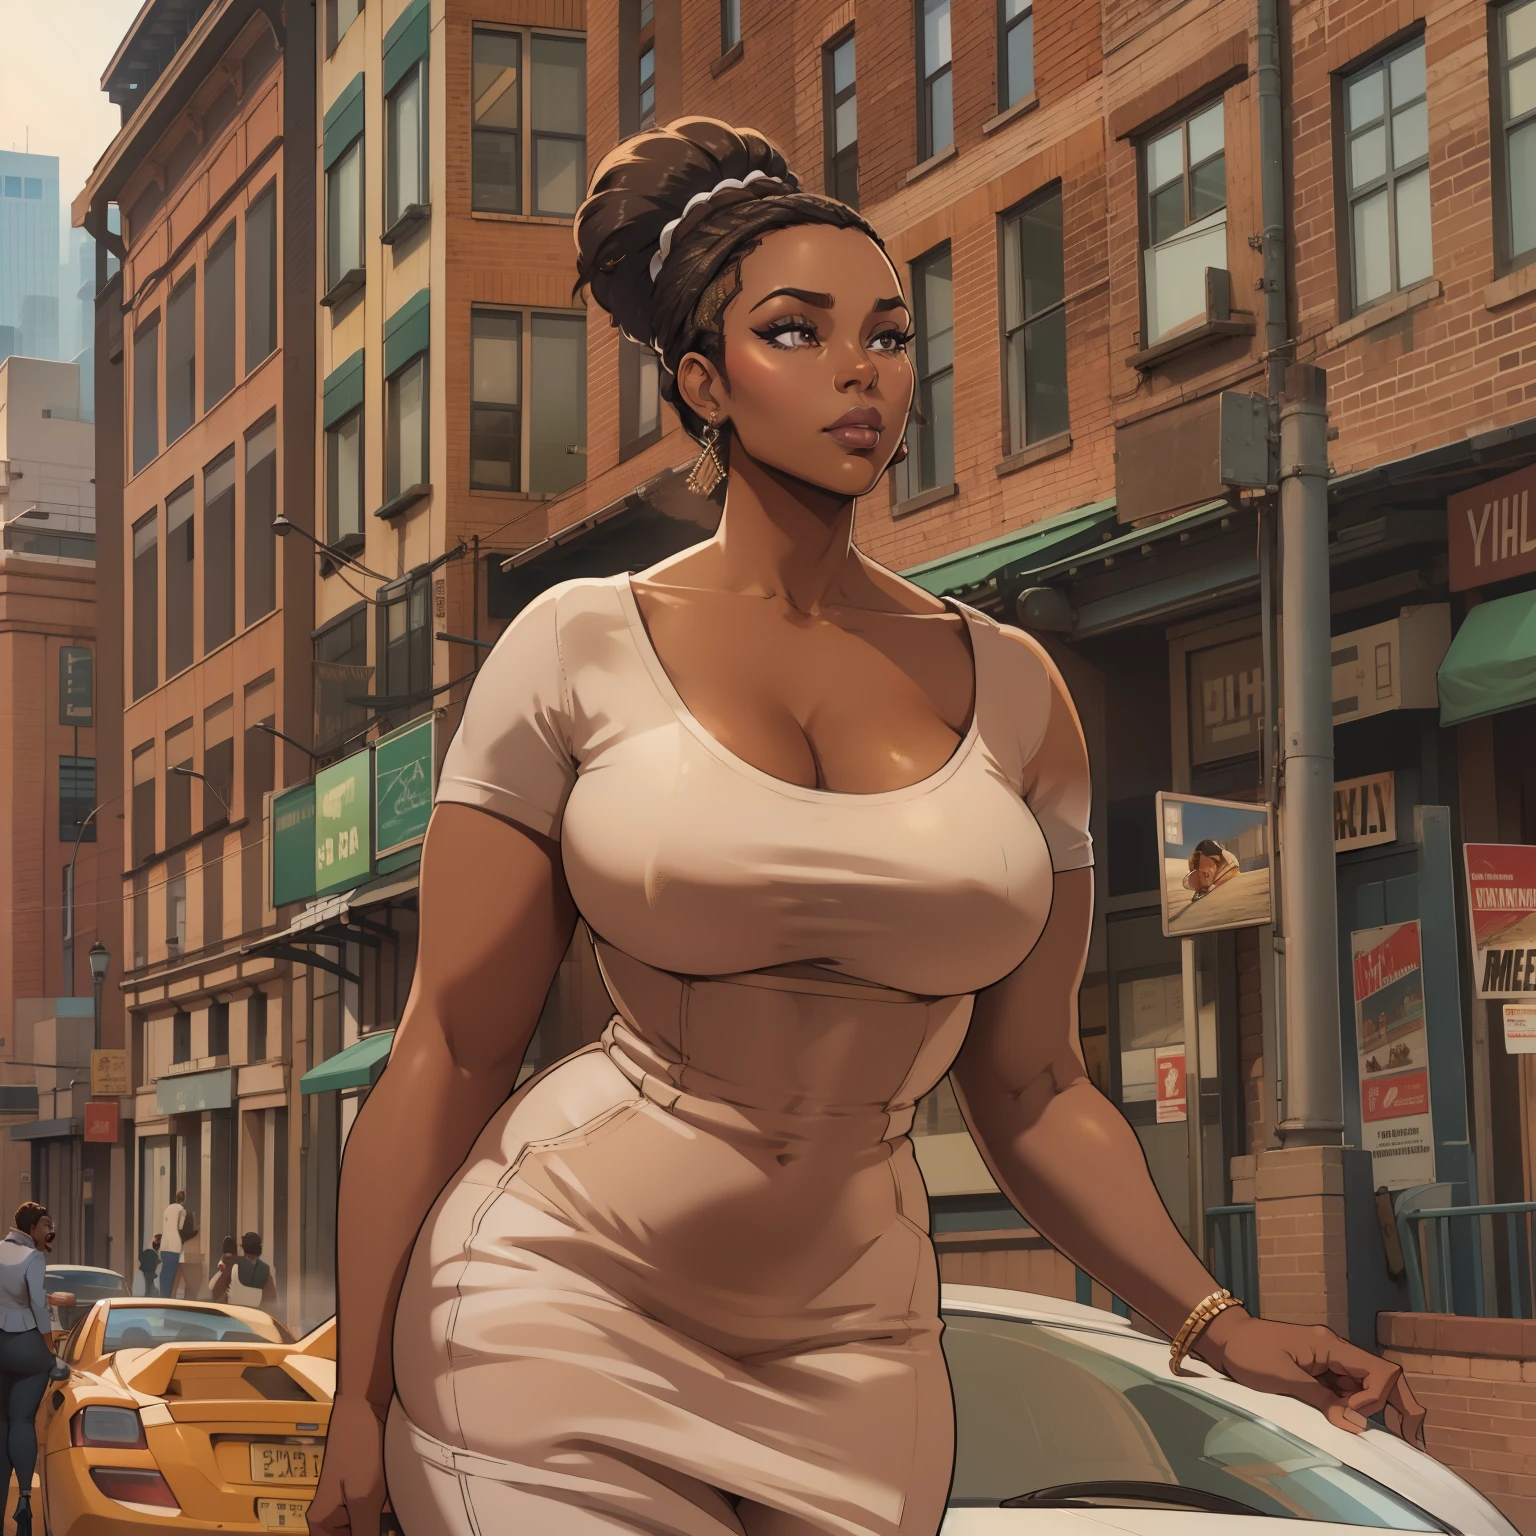 (eine reife Frau:1.2)| 1 Mädchen, kurvig, schöne afroamerikanische Frau, braune Haut, bilden, Super detailliert, moderner Stil, Stadt, direkter Blick, konturiert.